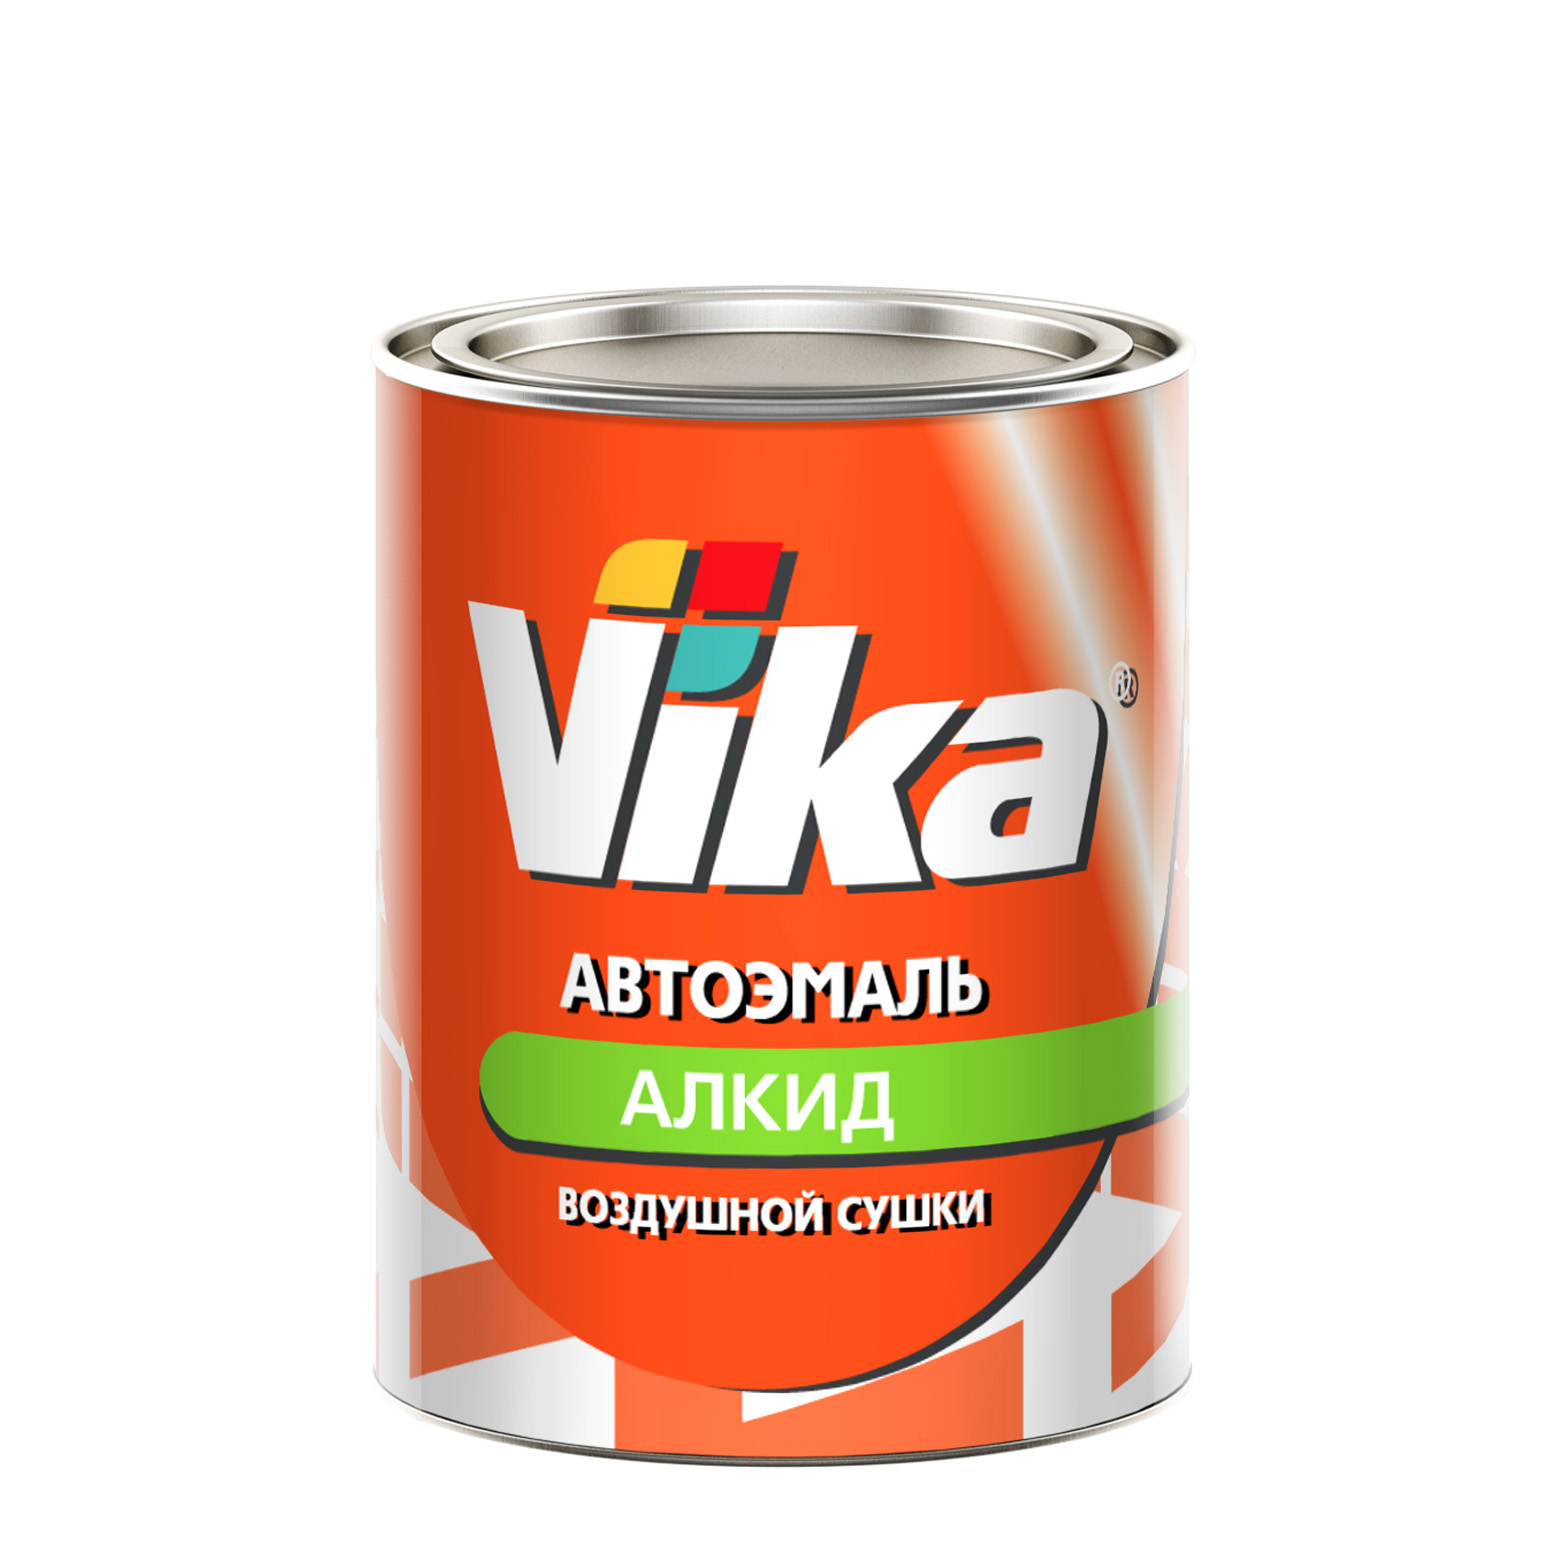 Фото 1 - Автоэмаль Vika-60, цвет 121 Реклама алкидная глянцевая естественной сушки - 0,8 кг.